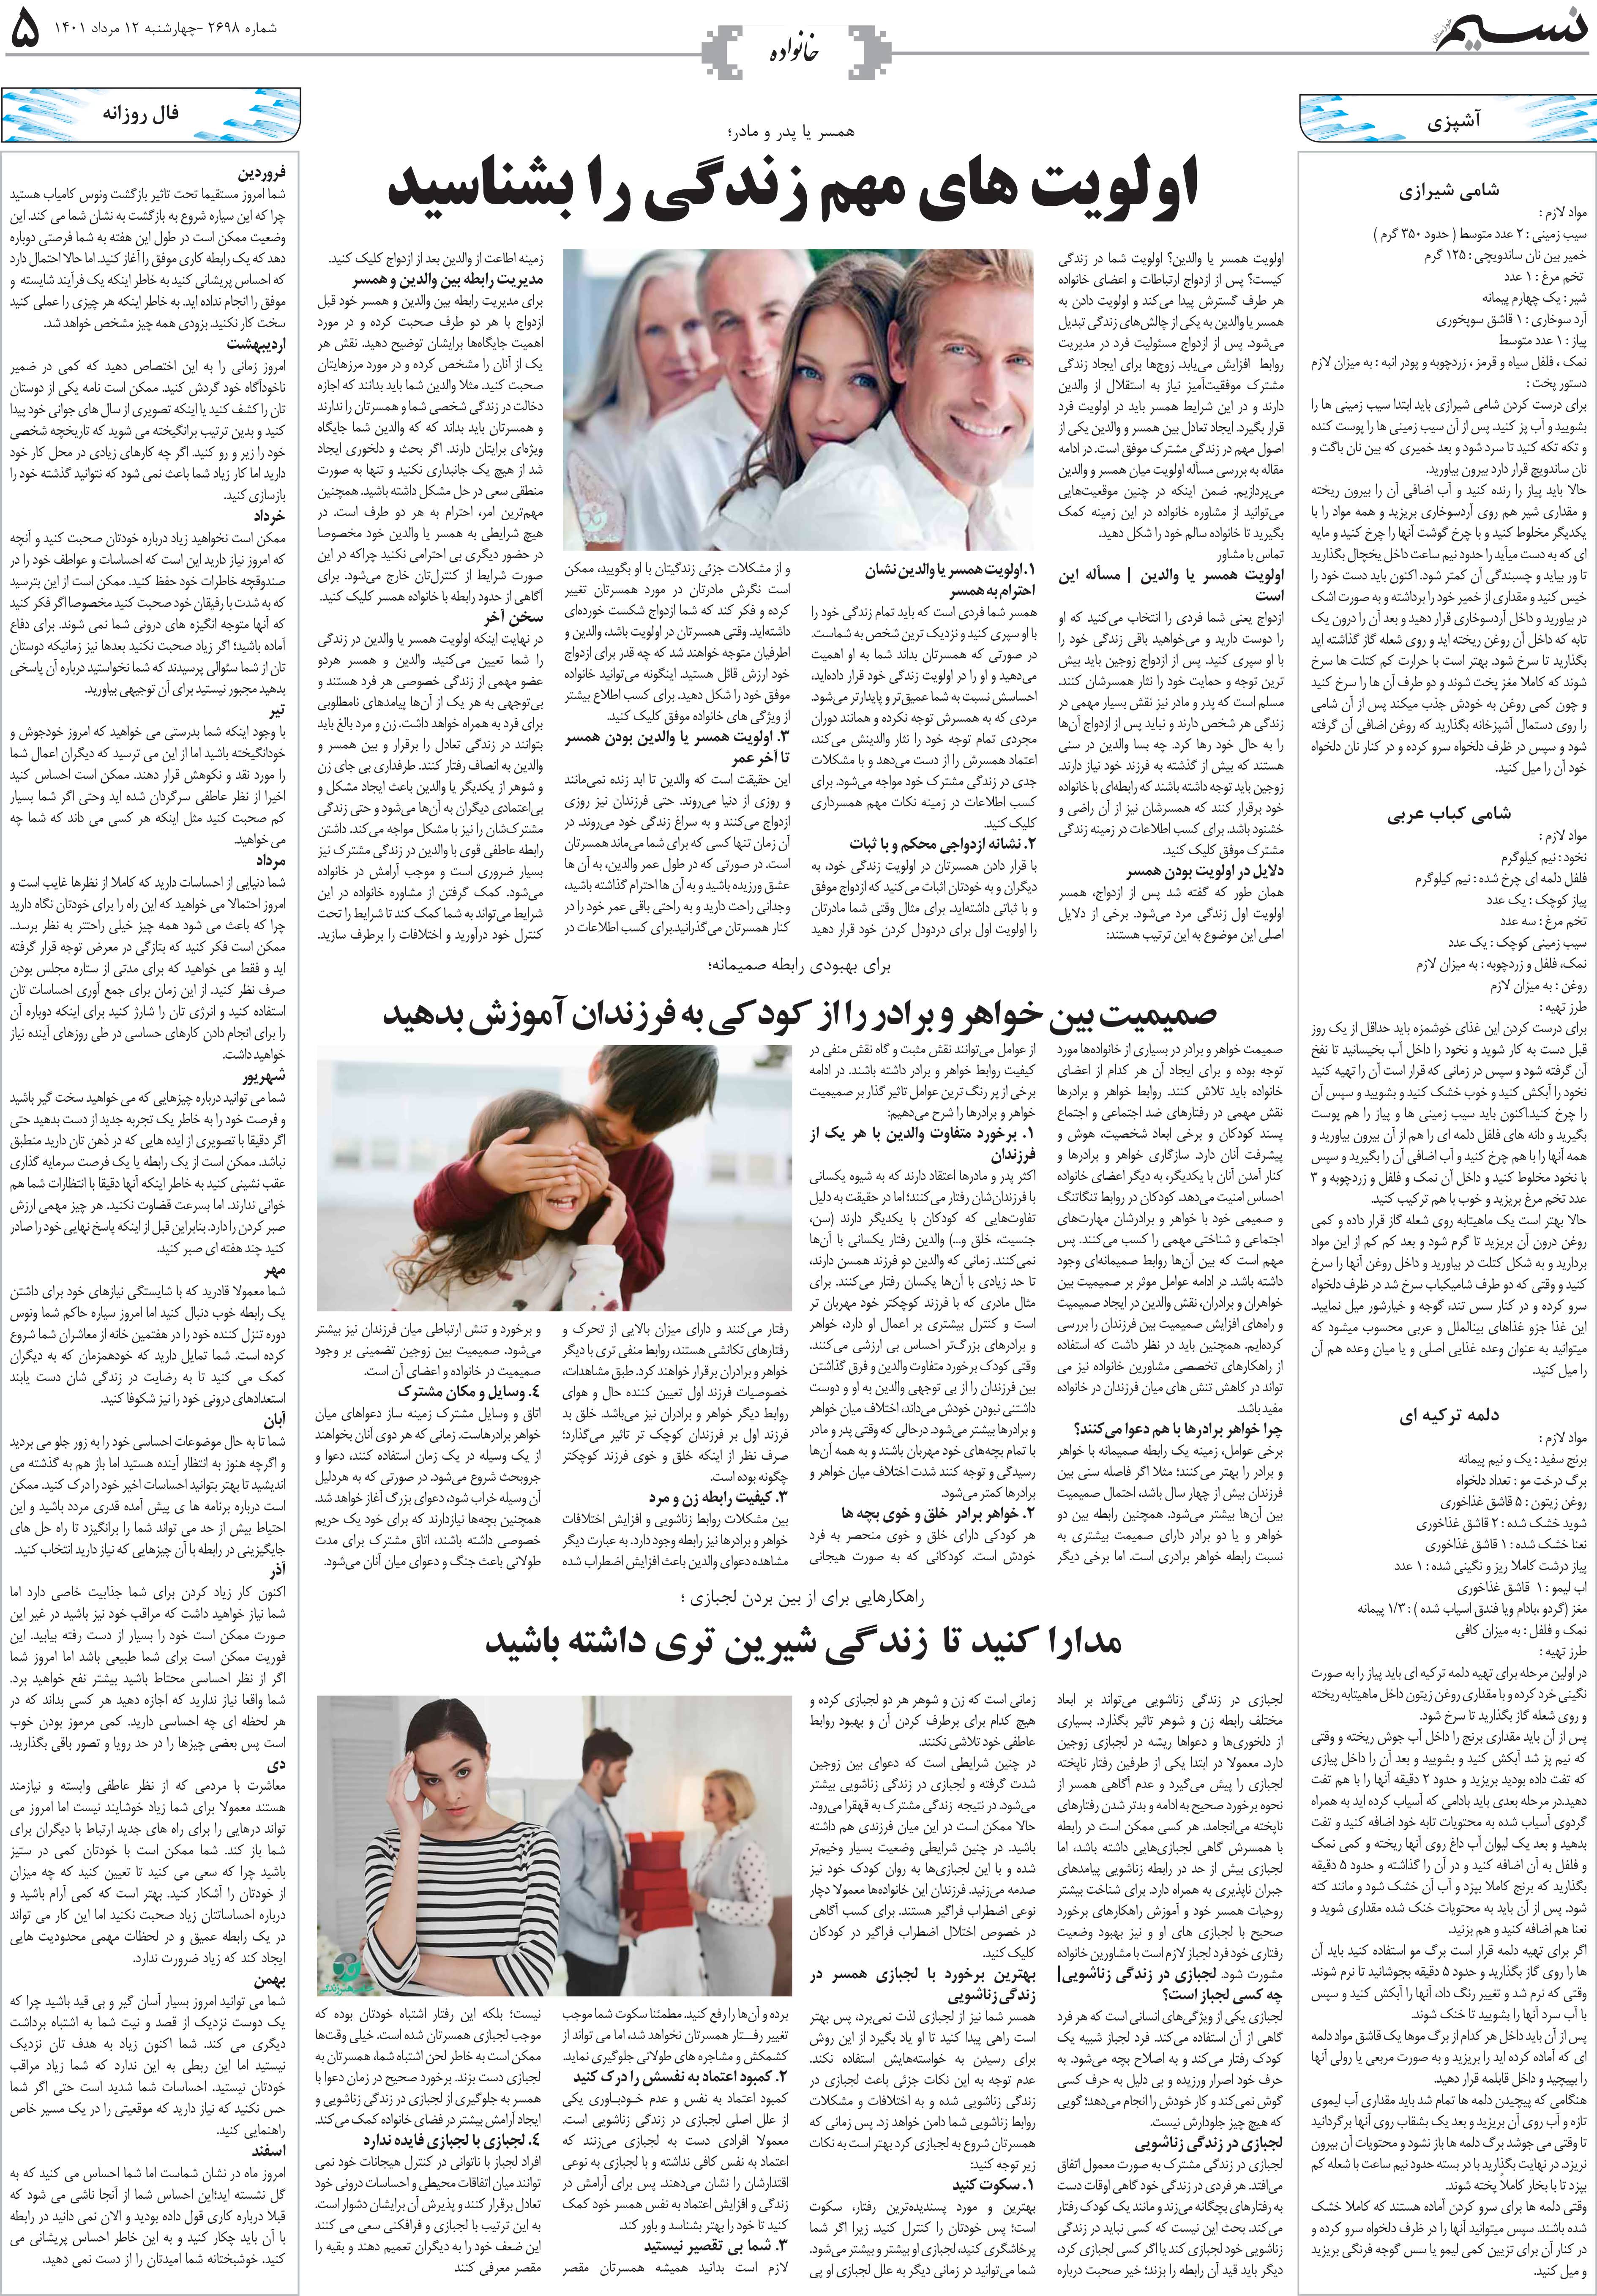 صفحه خانواده روزنامه نسیم شماره 2698